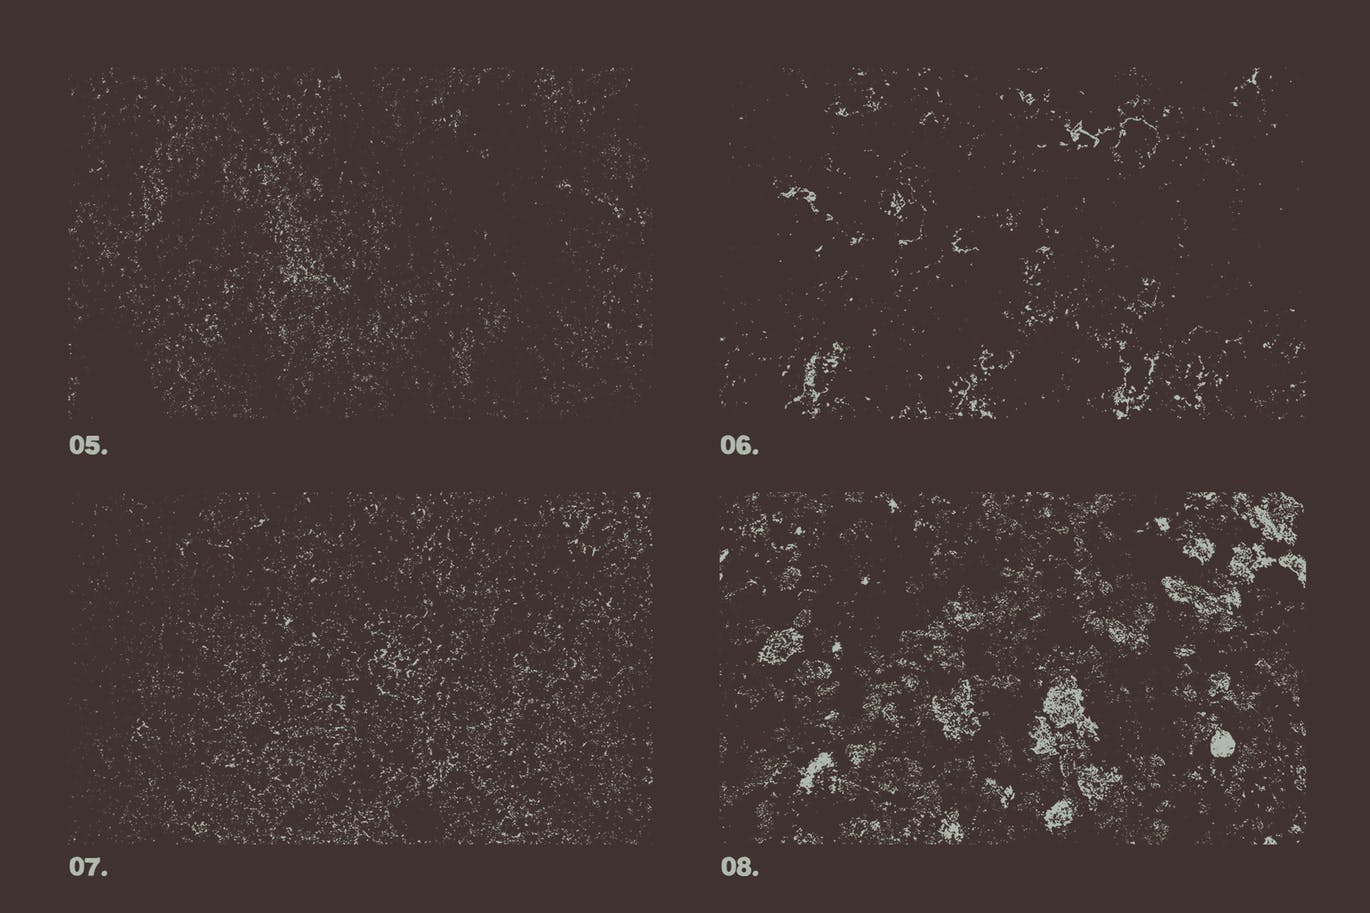 12款大理石纹理矢量背景素材 Vector Marble Textures x12插图(1)